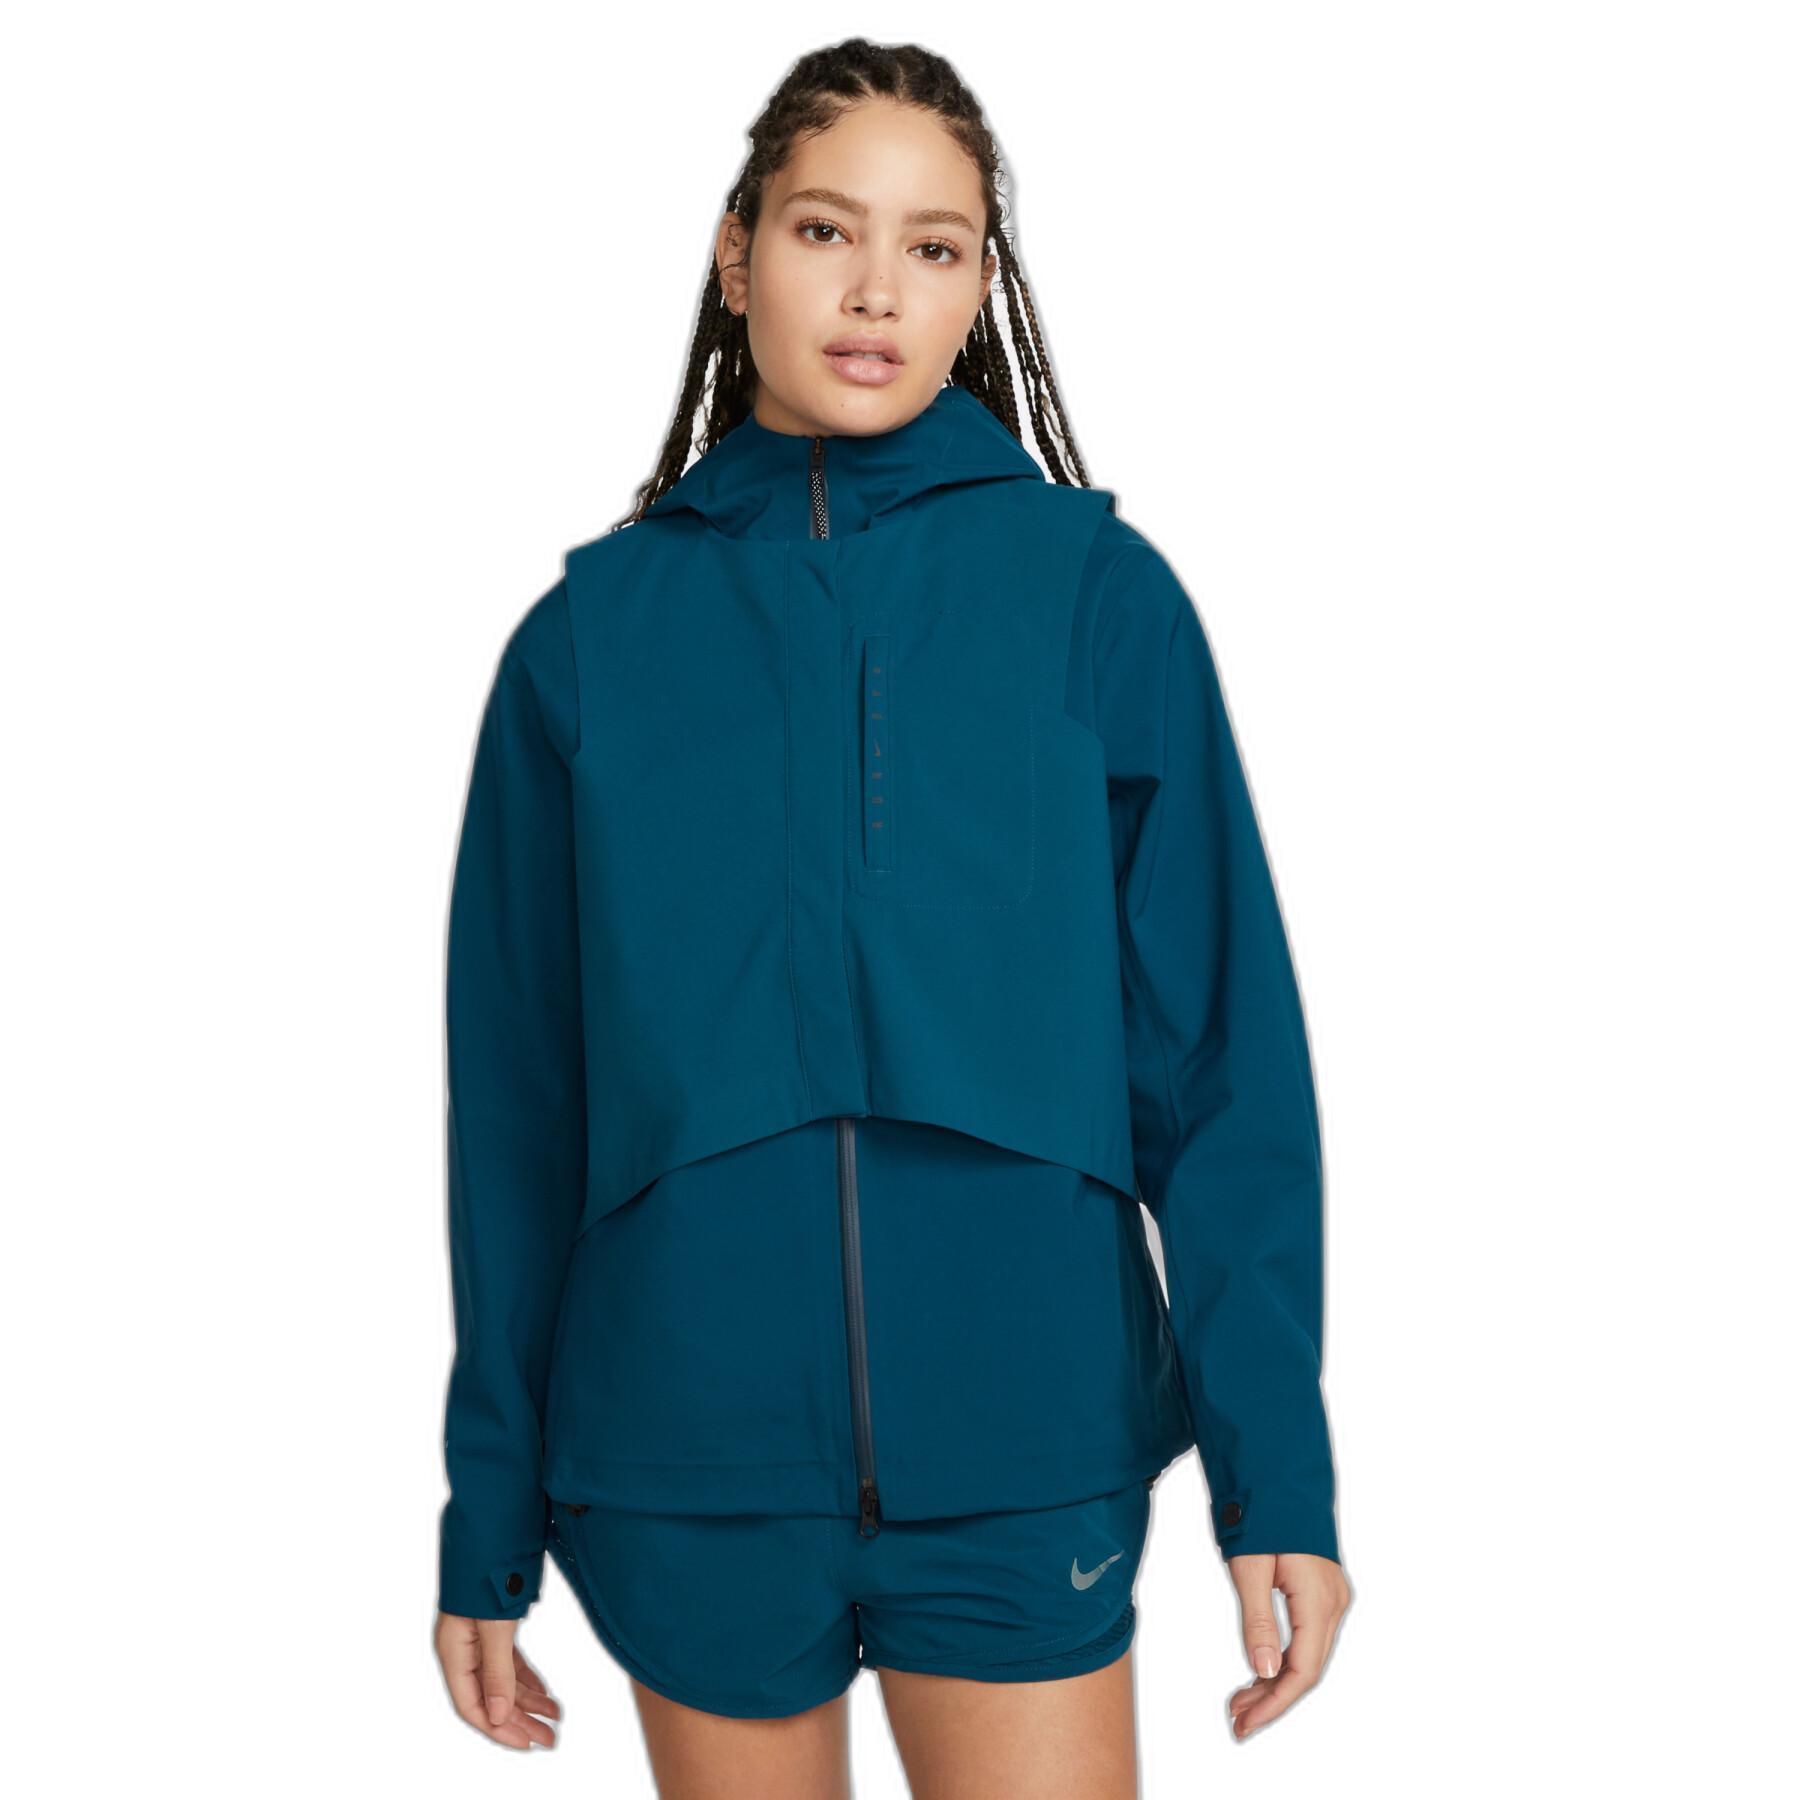 Veste imperméable à capuche zippé femme Nike Storm-FIT Run Division